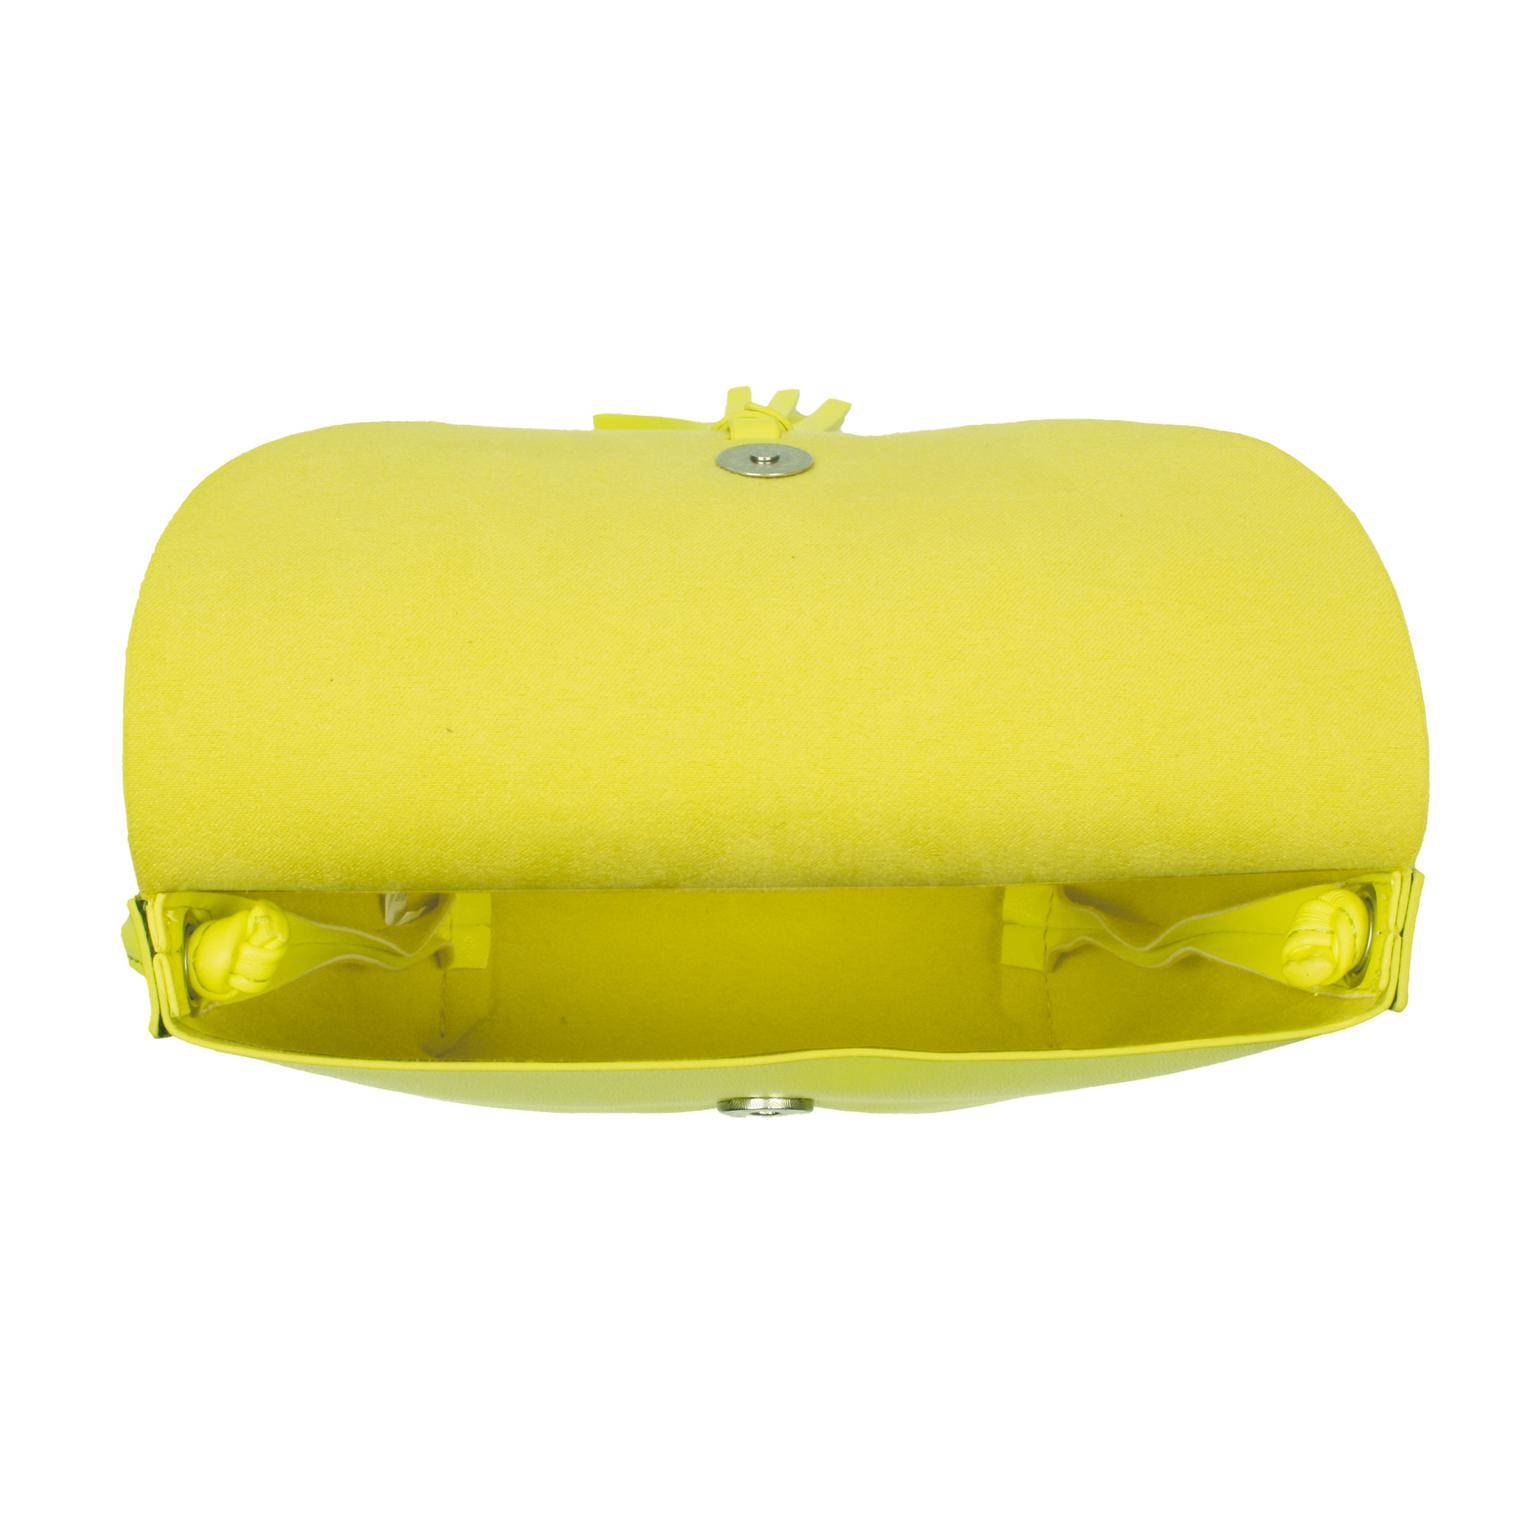 Женская сумка Tom Tailor Bags, желтая, цвет желтый, размер ONE SIZE - фото 3